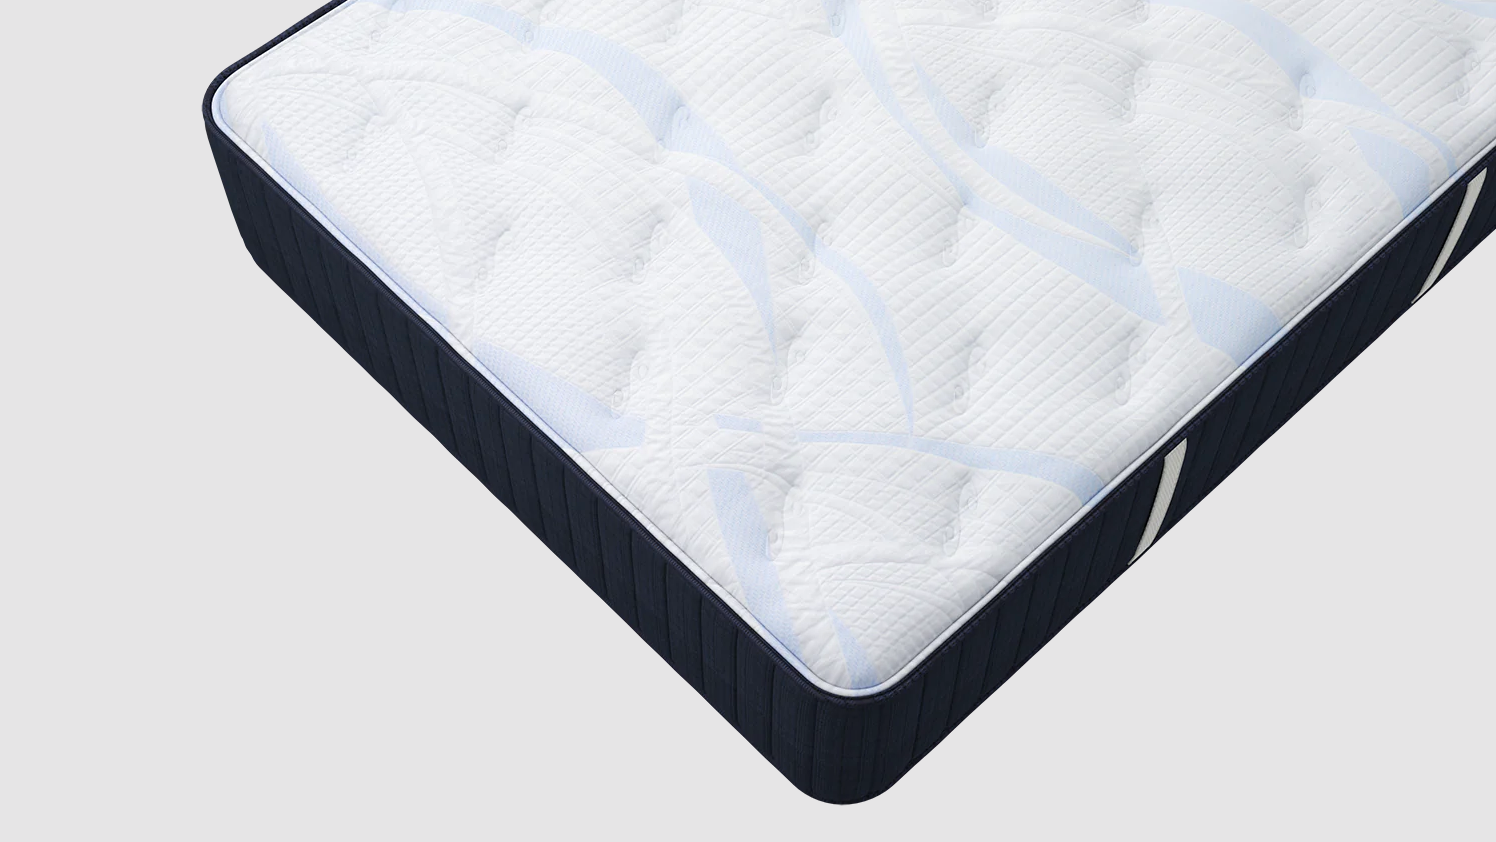 southerland signature carly plush mattress reviews